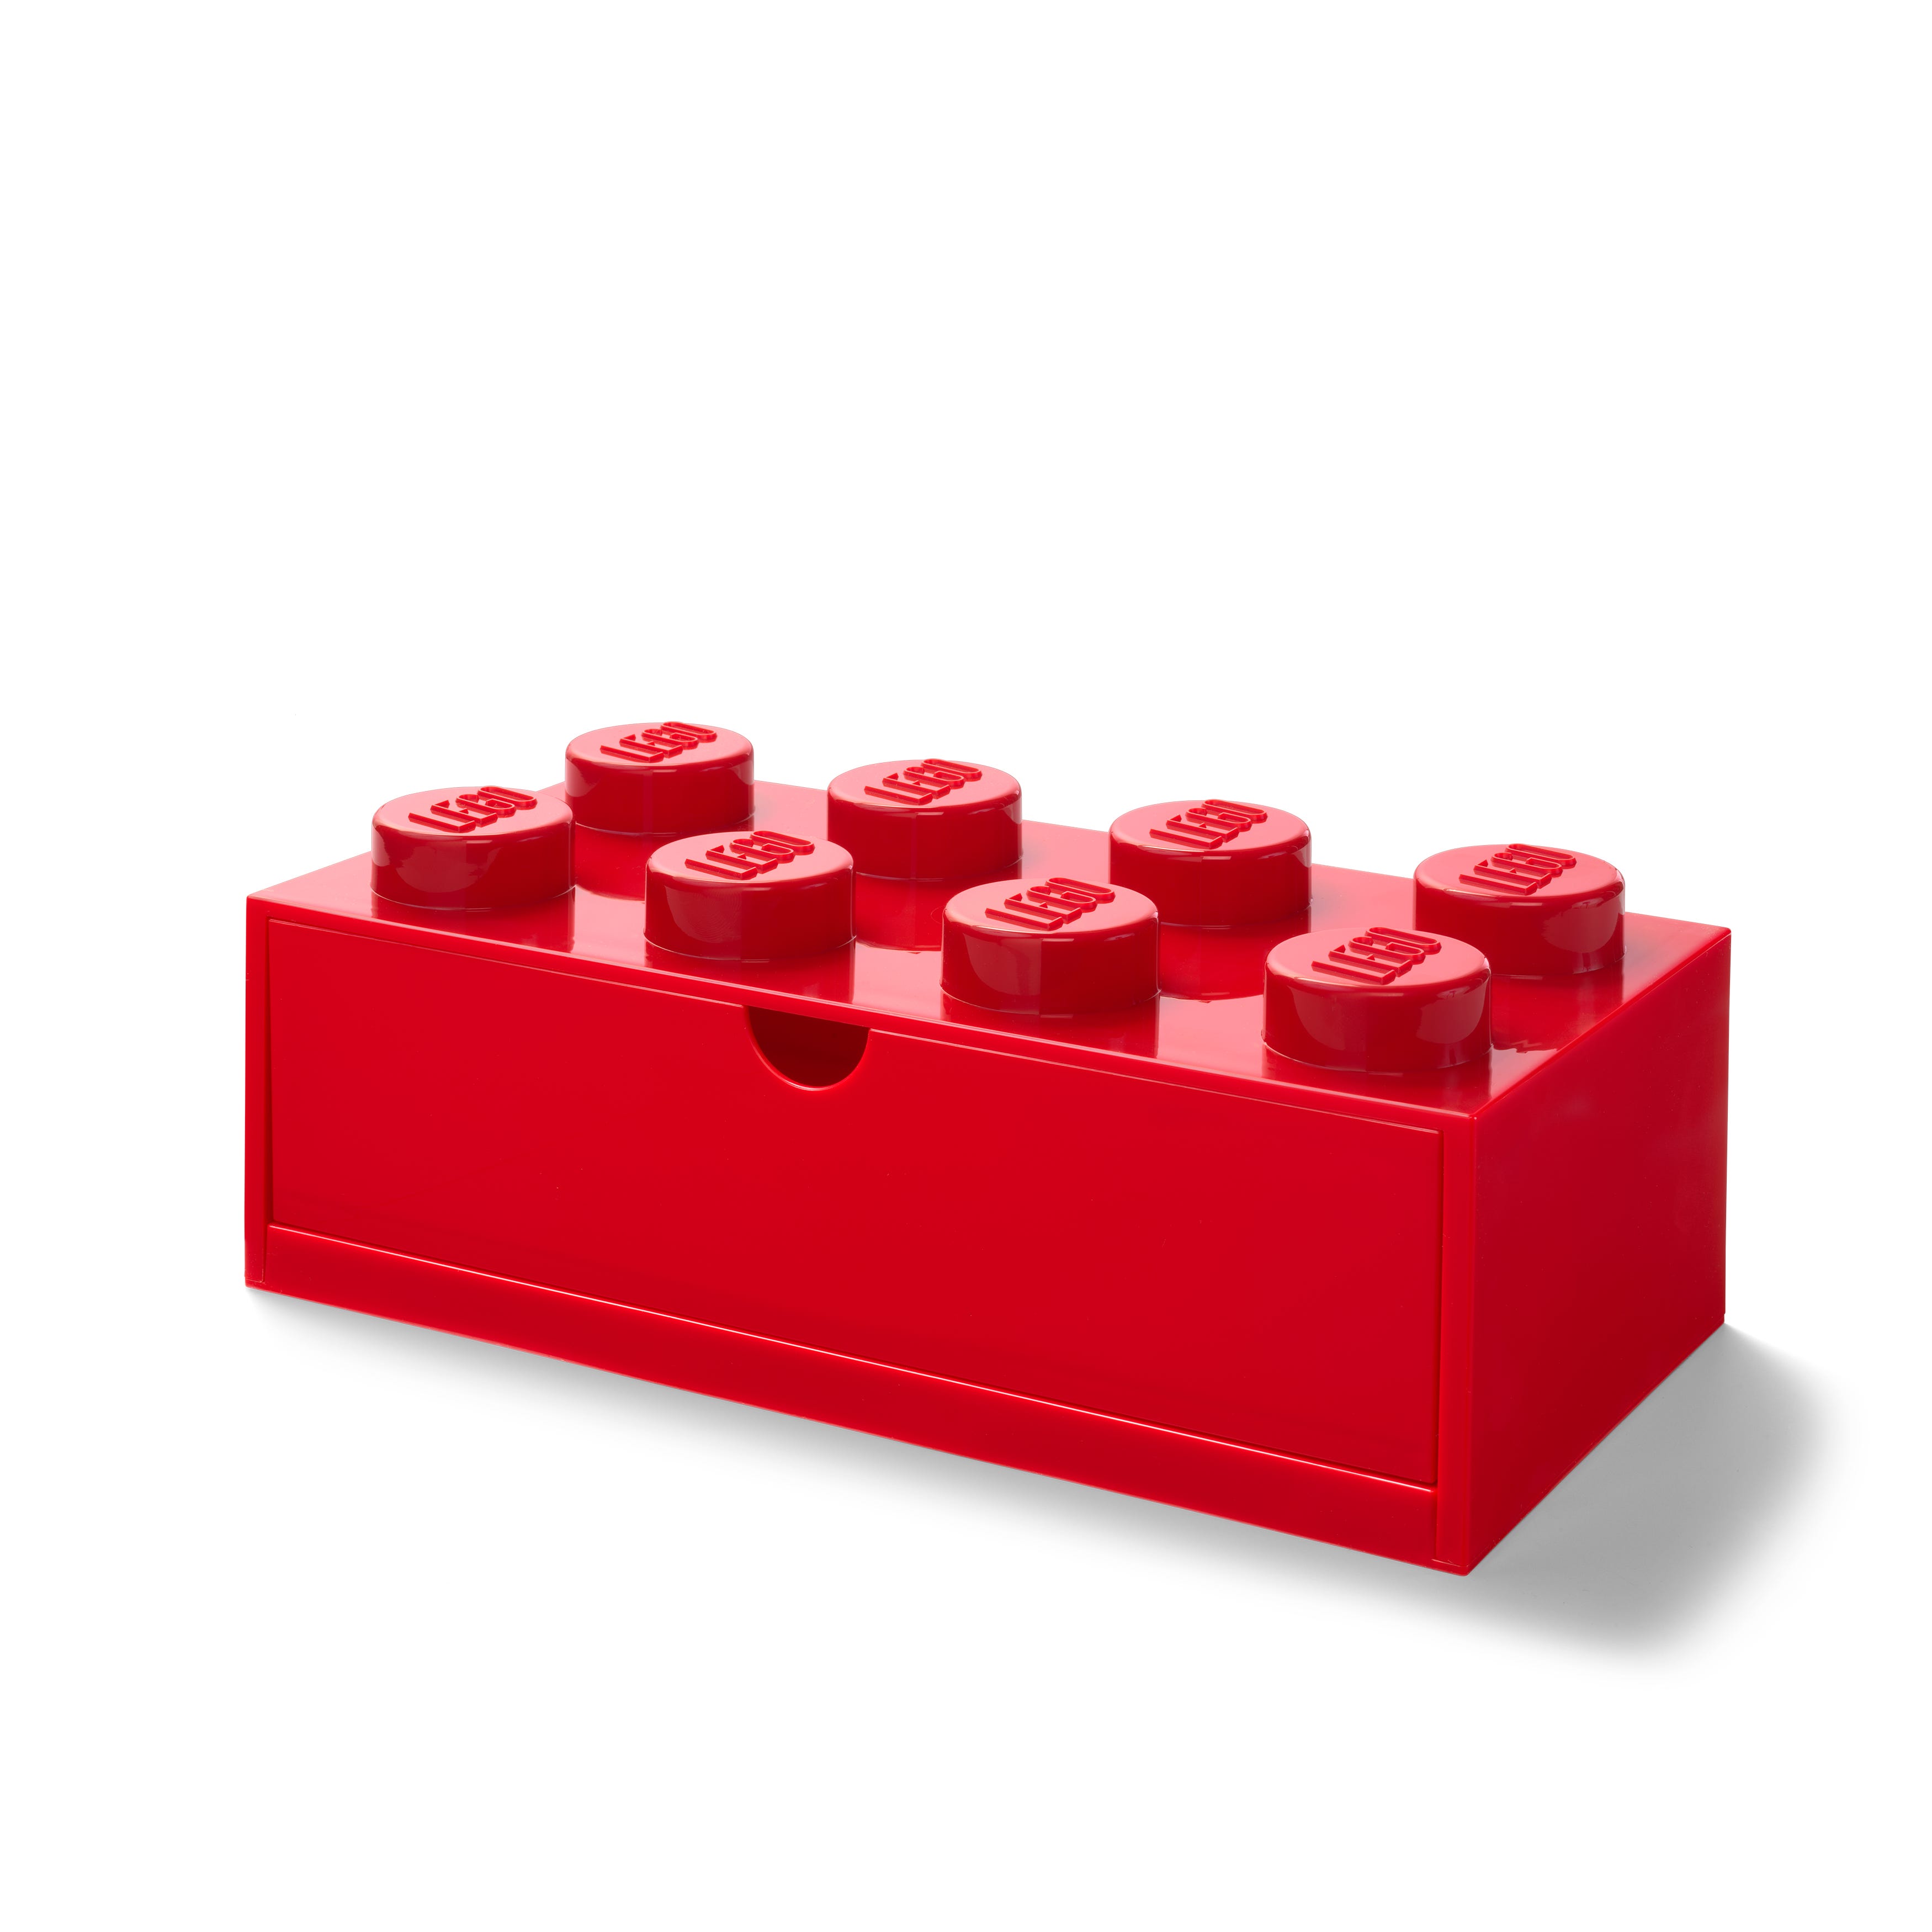 Image of Aufbewahrungsstein mit Schubfach und 8 Noppen in Rot